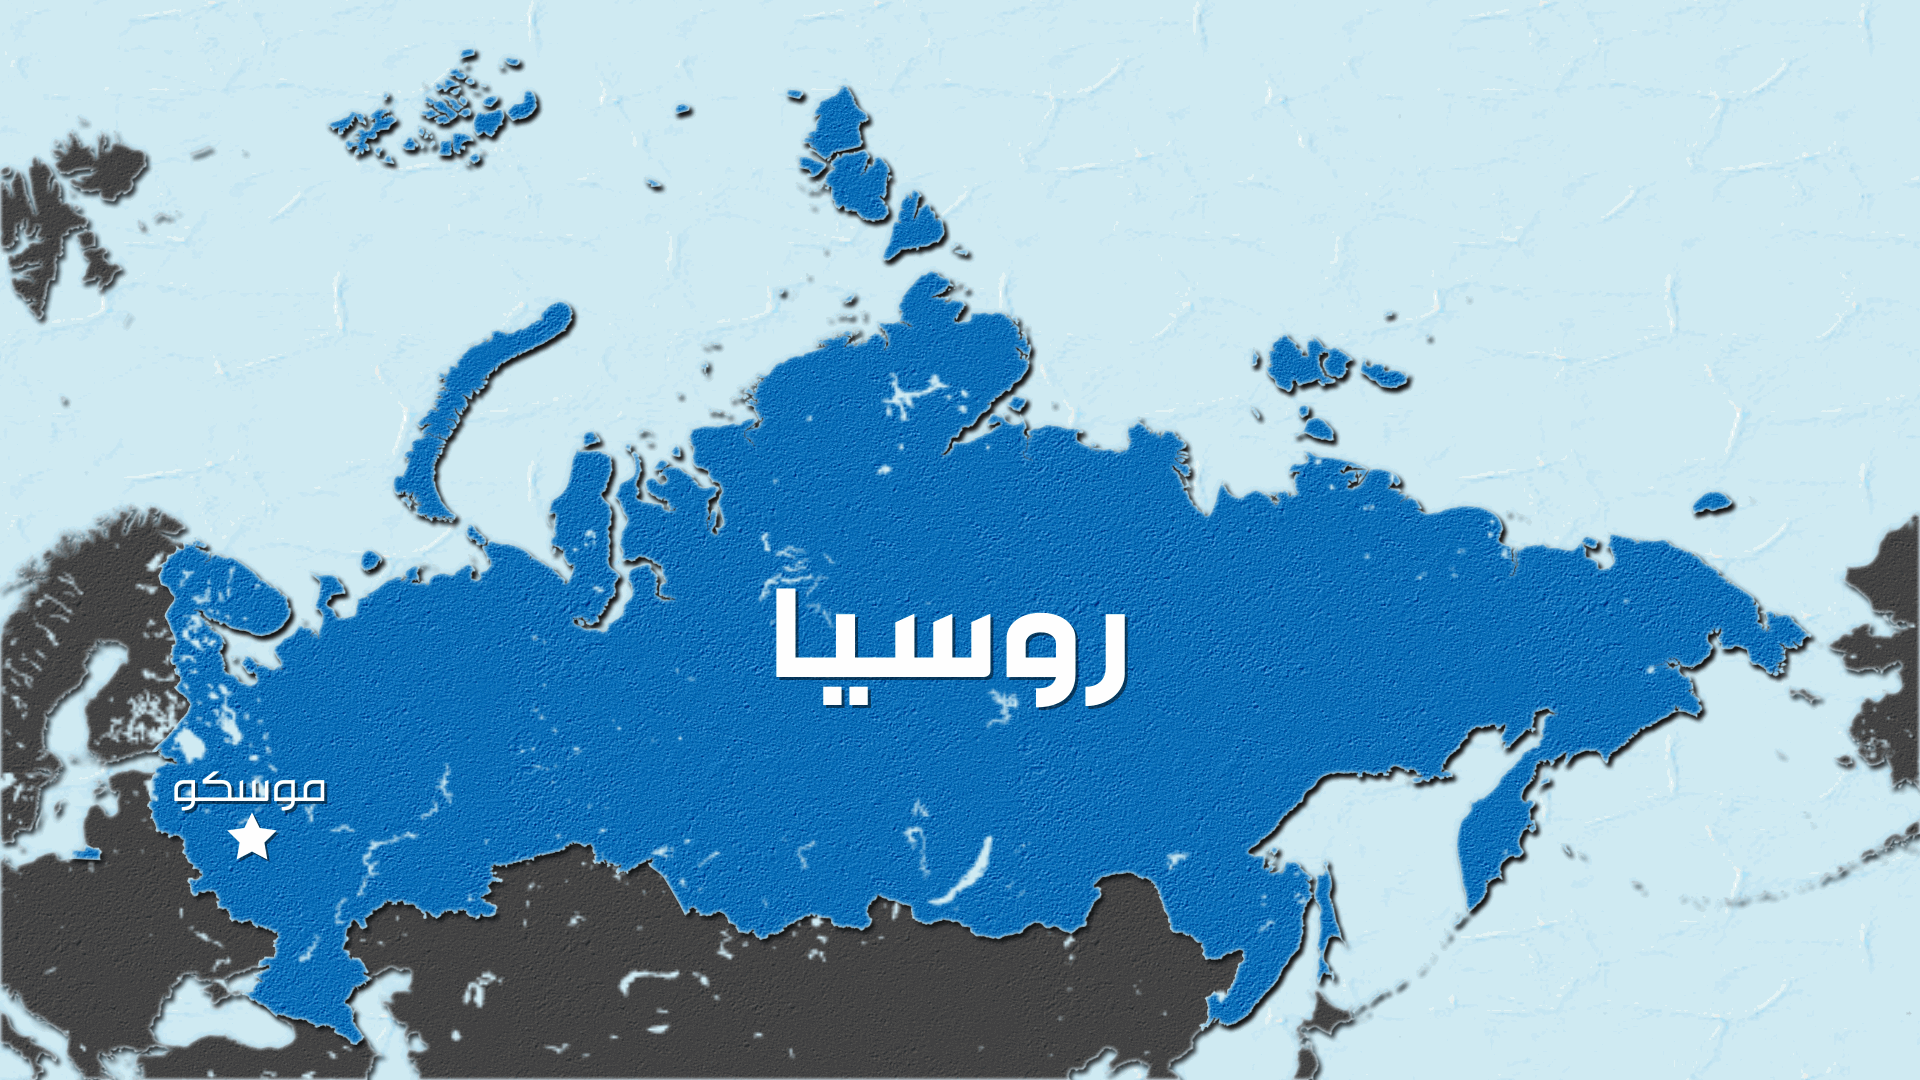 اعتقال اثنين من طاجيكستان خلال عملية لمكافحة الإرهاب في روسيا